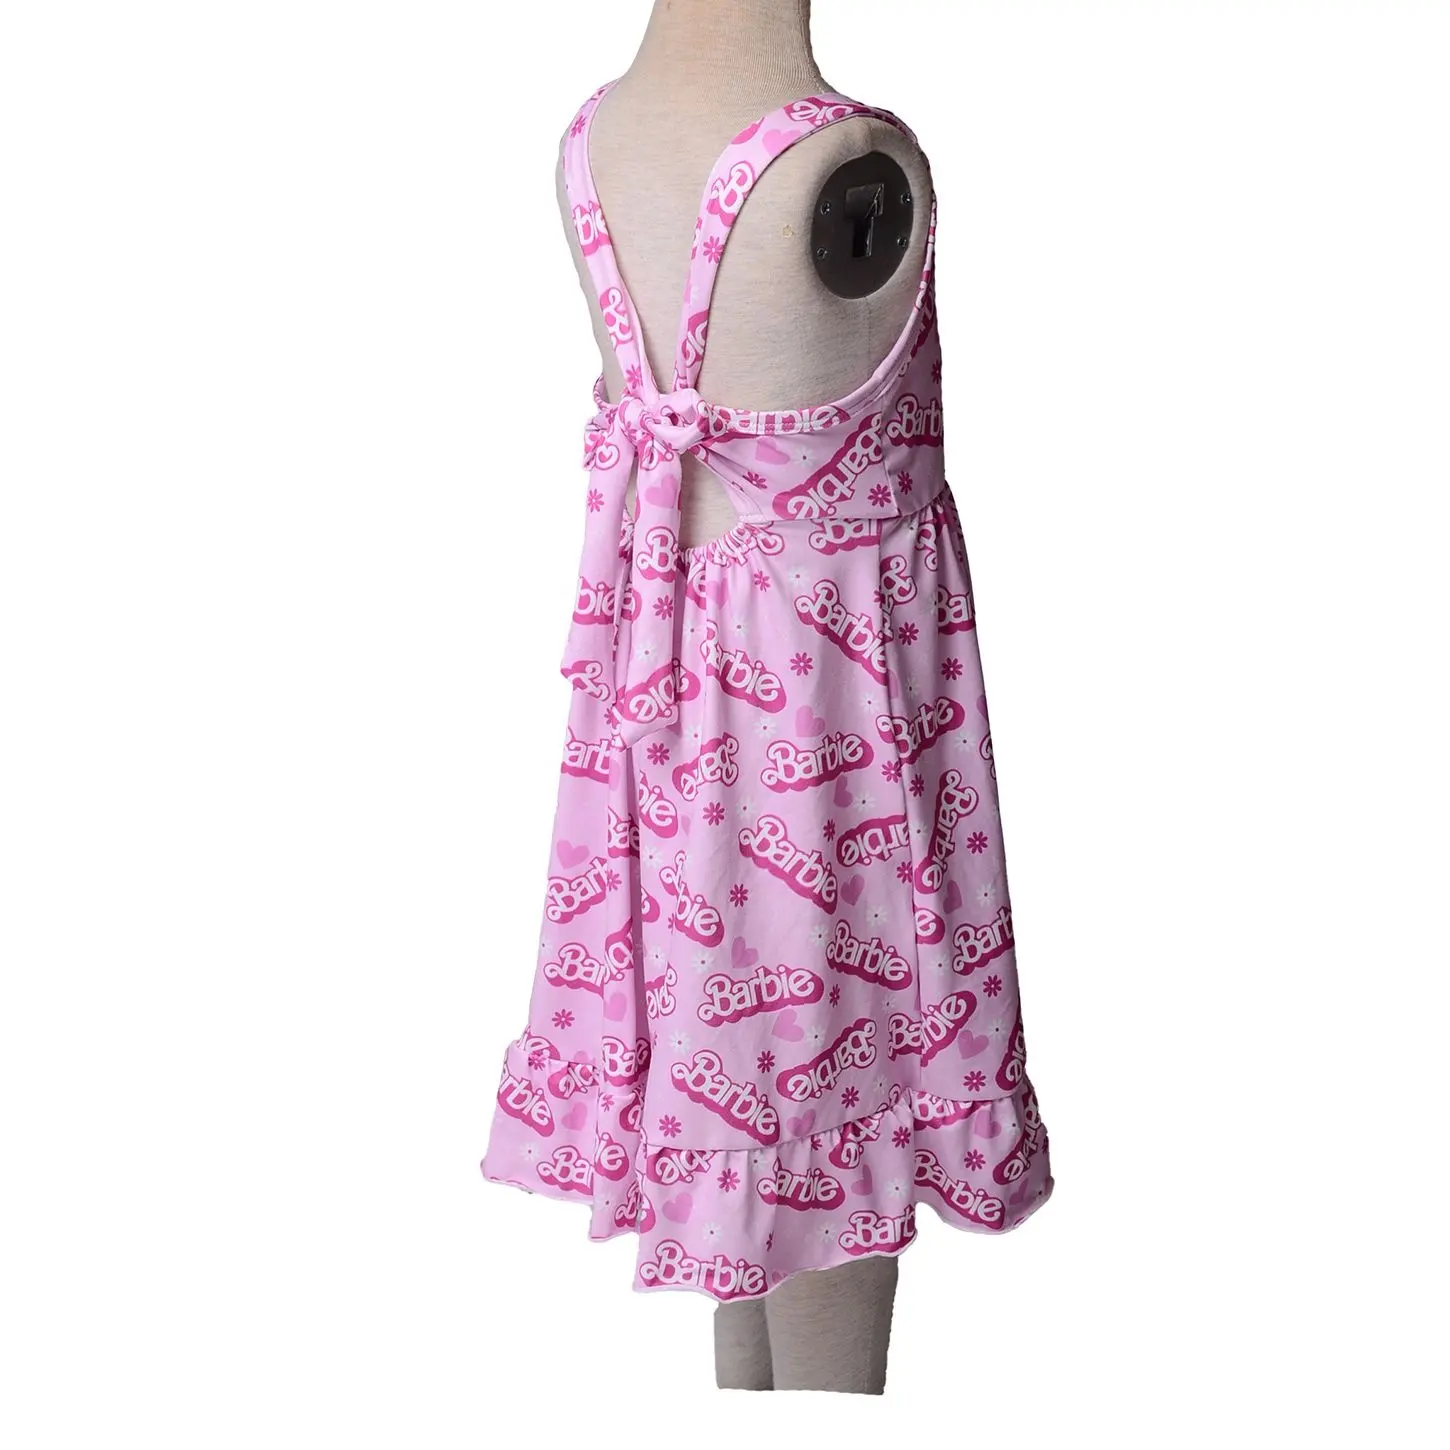 La fábrica personaliza rápidamente el vestido de niña de algodón con correa trasera ajustable de impresión